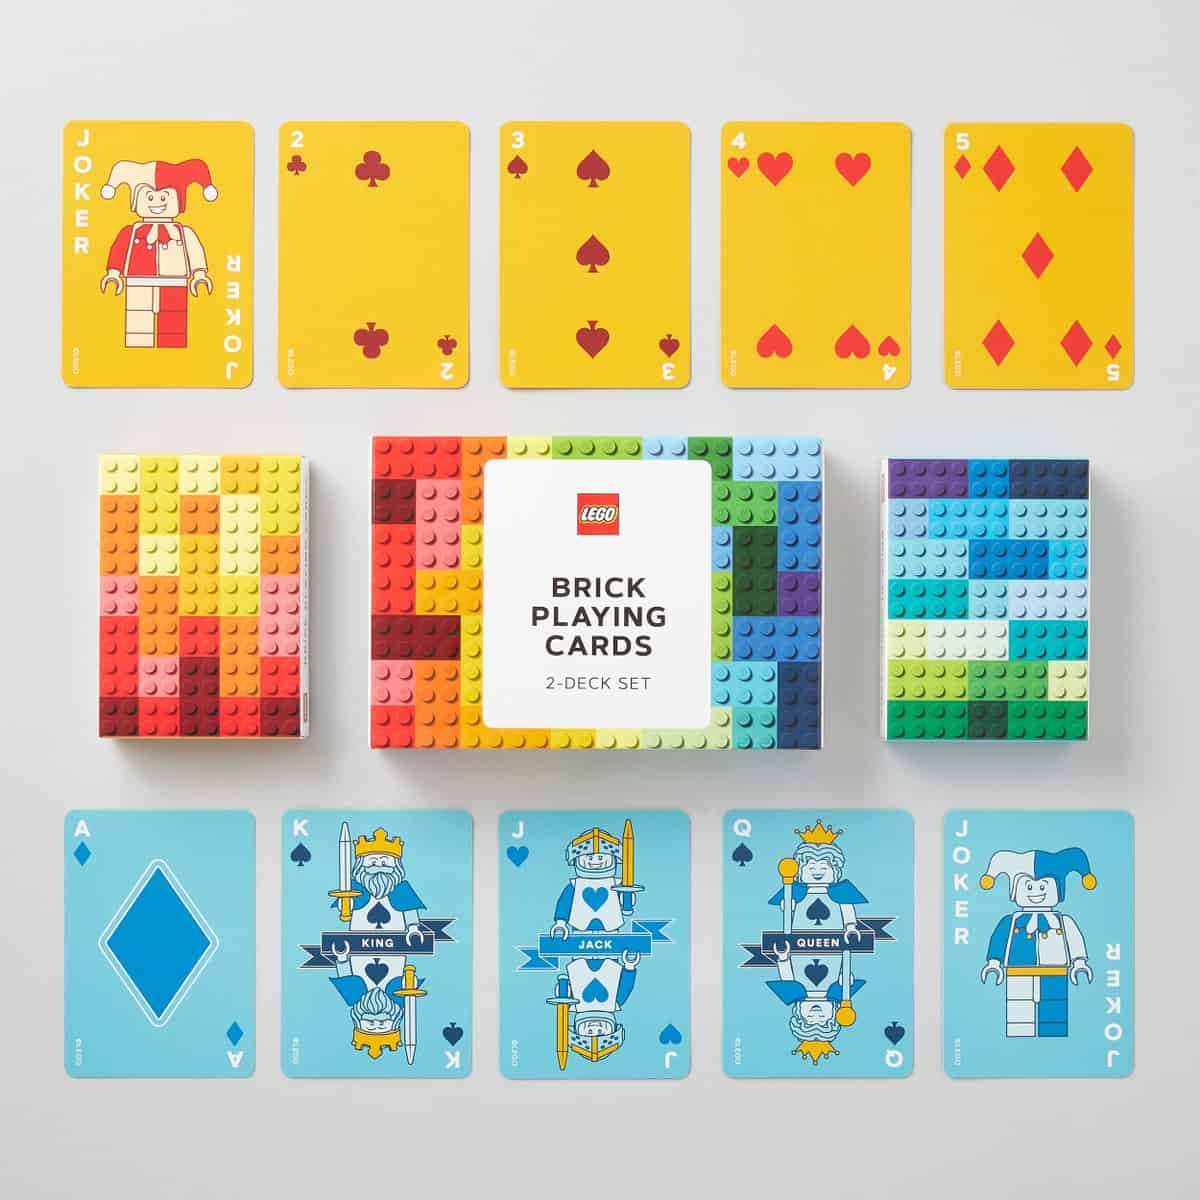 barajas de cartas lego 5006906 disenos de ladrillos